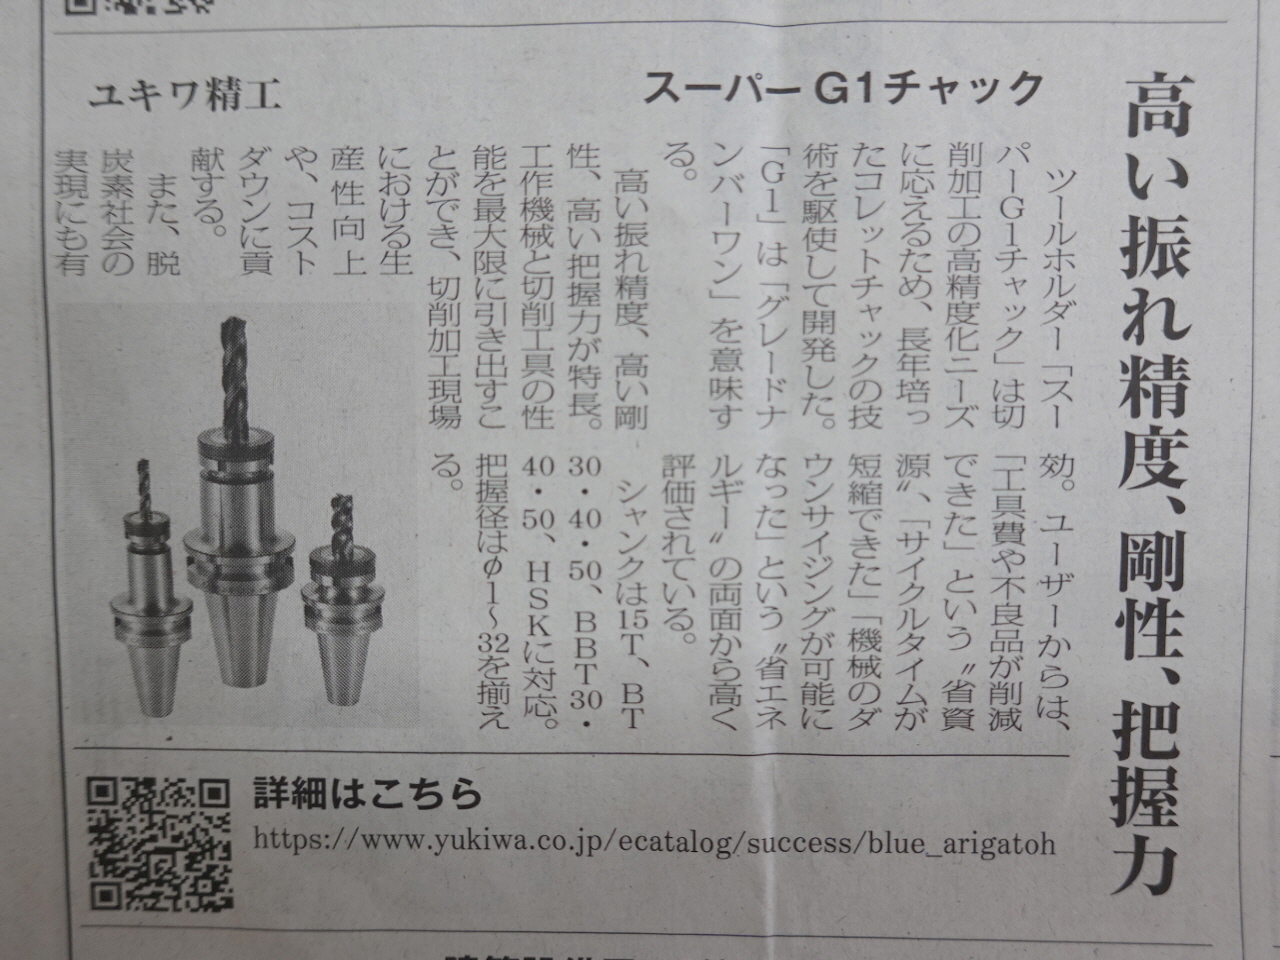 日本産機新聞『今年の戦略商品』にスーパーG1チャックが掲載されました。